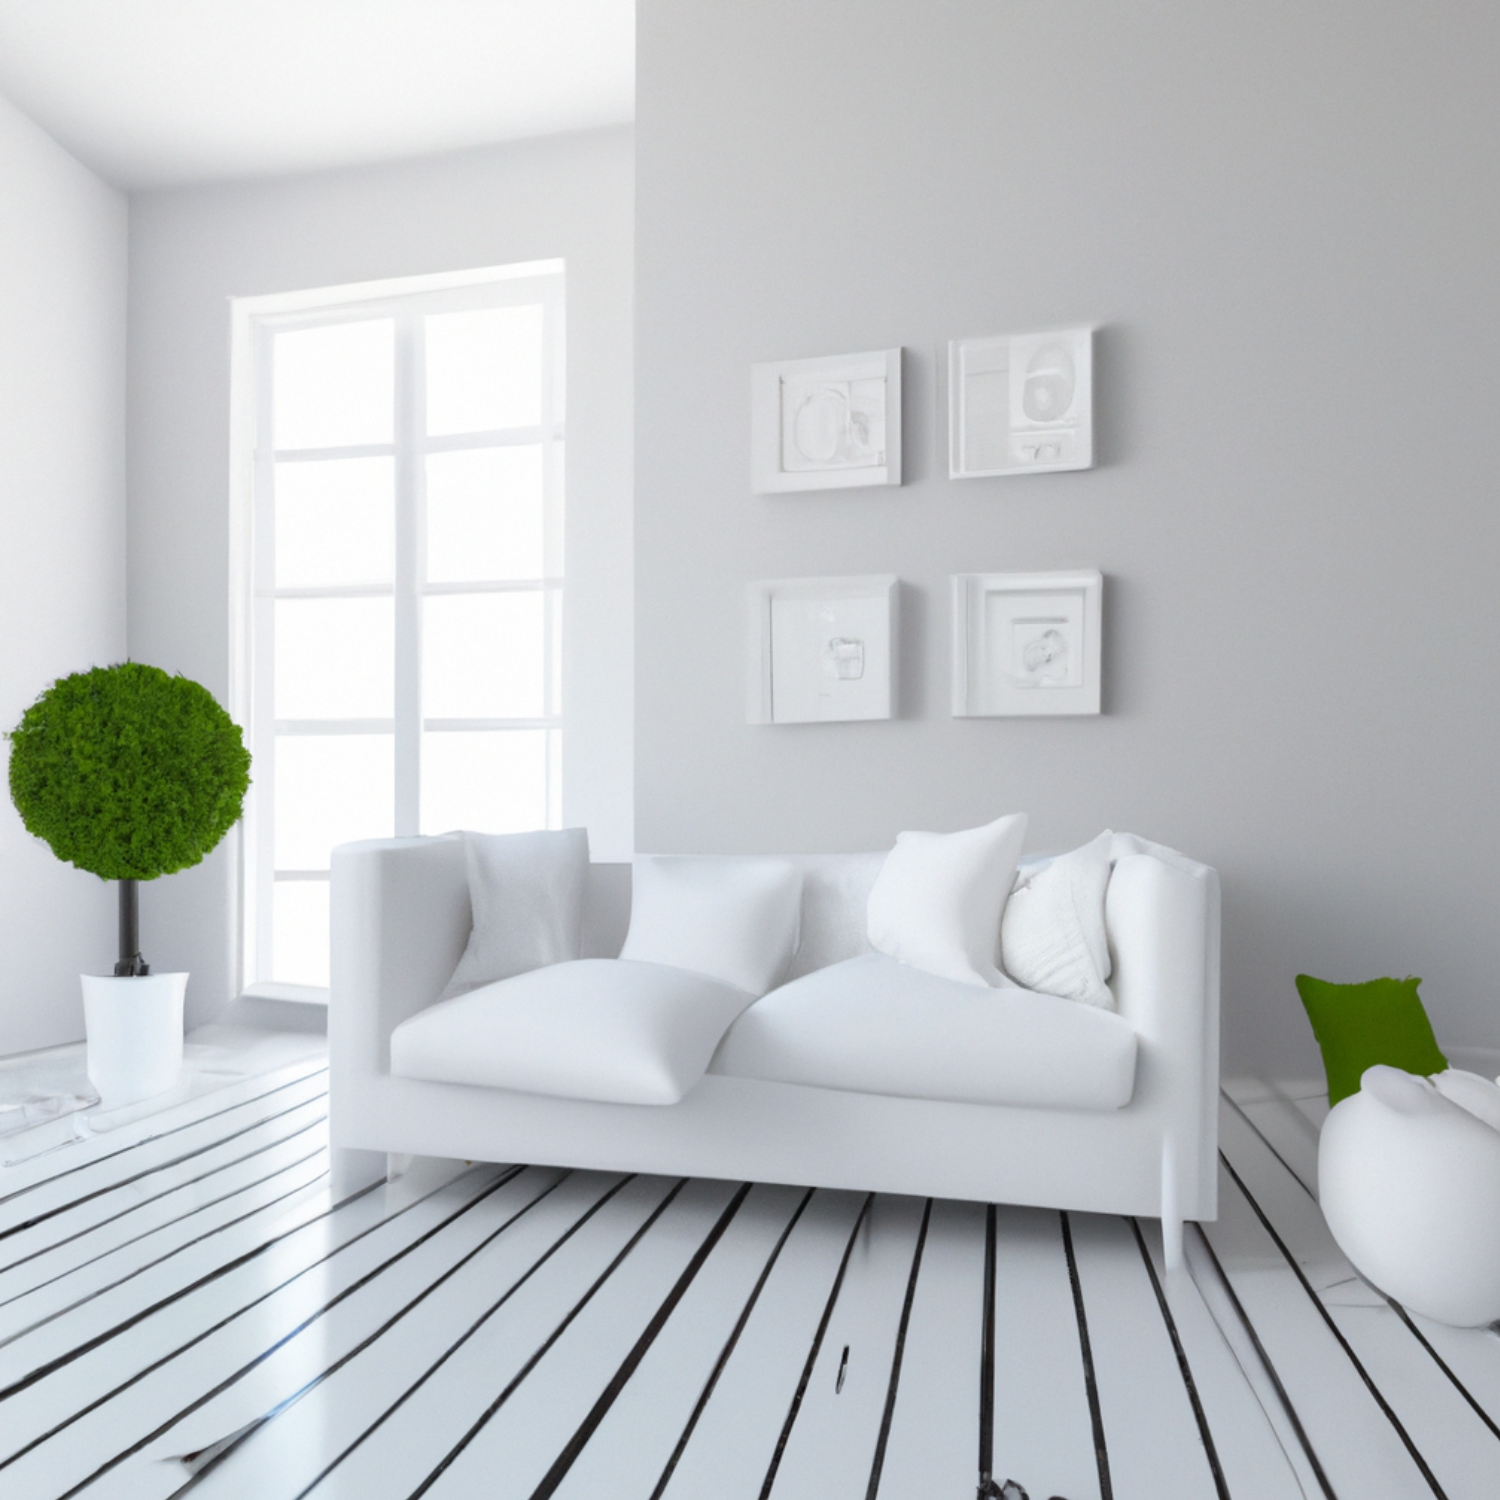 Moderná obývačka s chladnými odtieňmi bielej farby